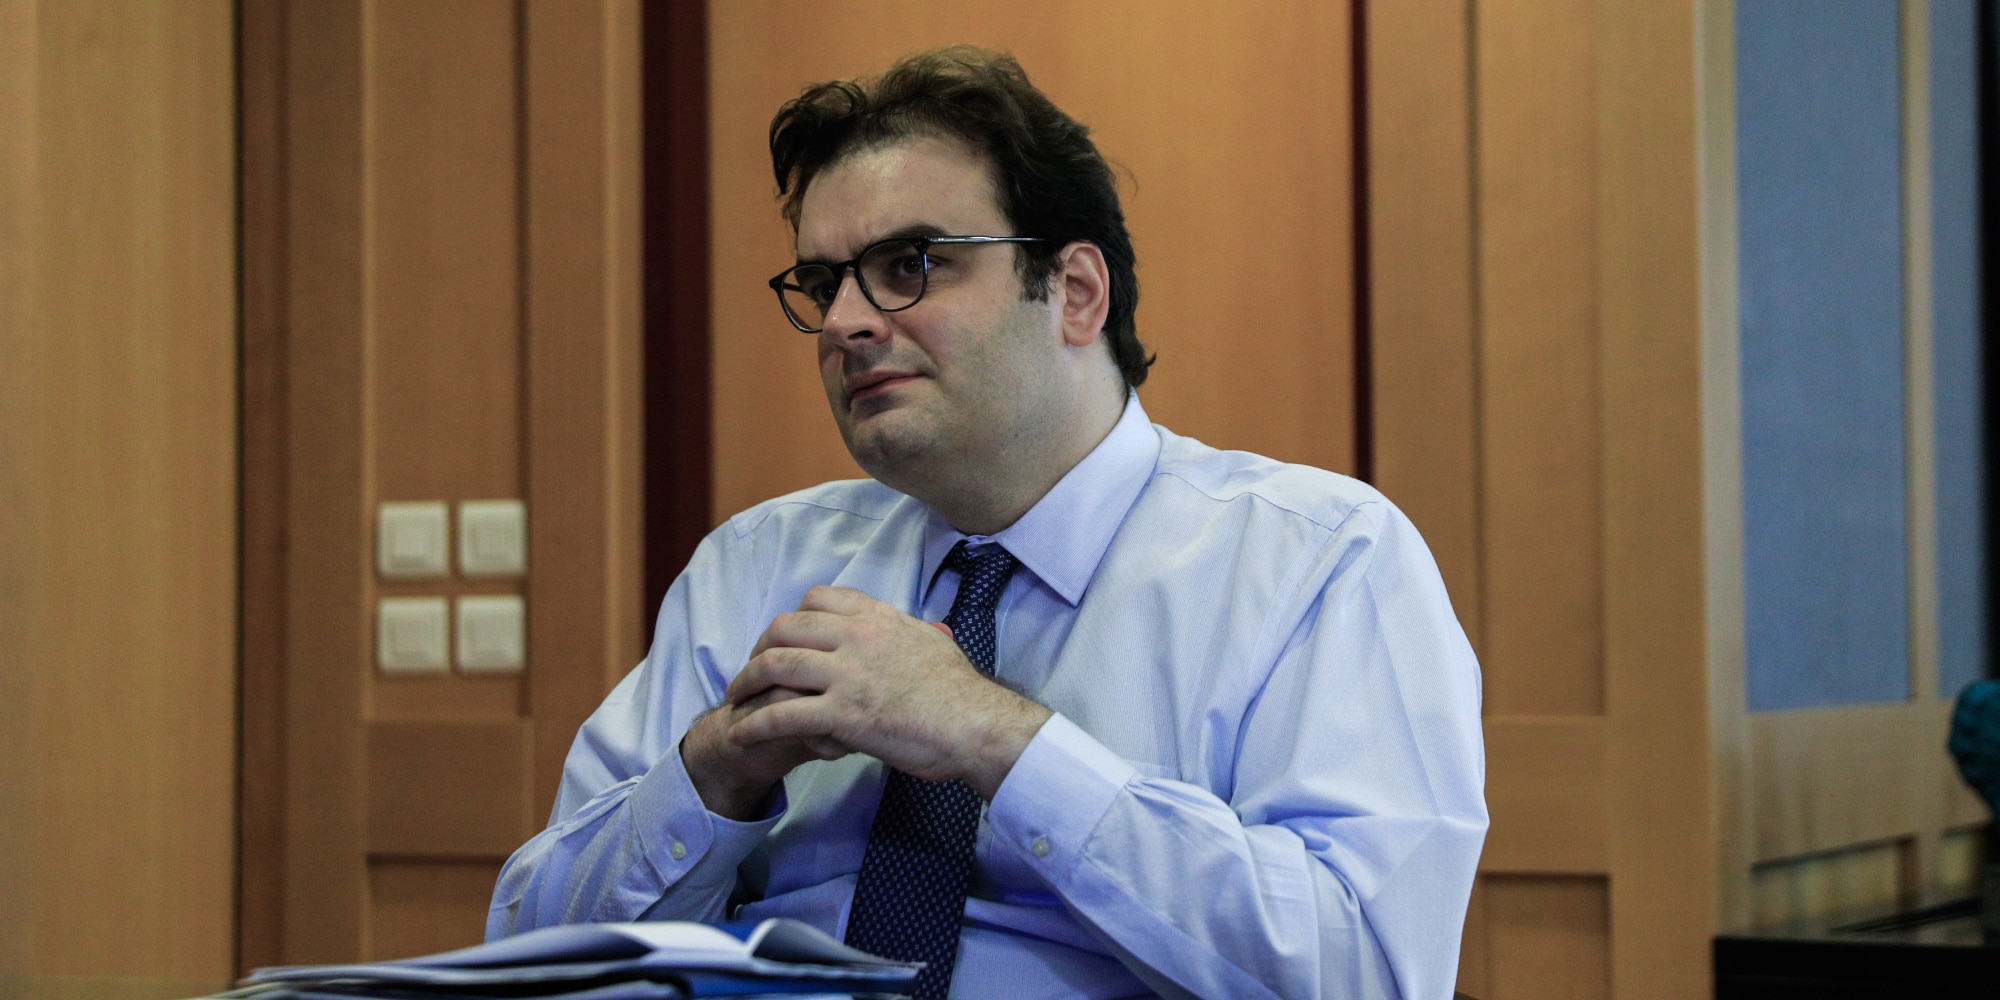 Ο υπουργός Ψηφιακής Διακυβέρνησης, Κυριάκος Πιερρακάκης